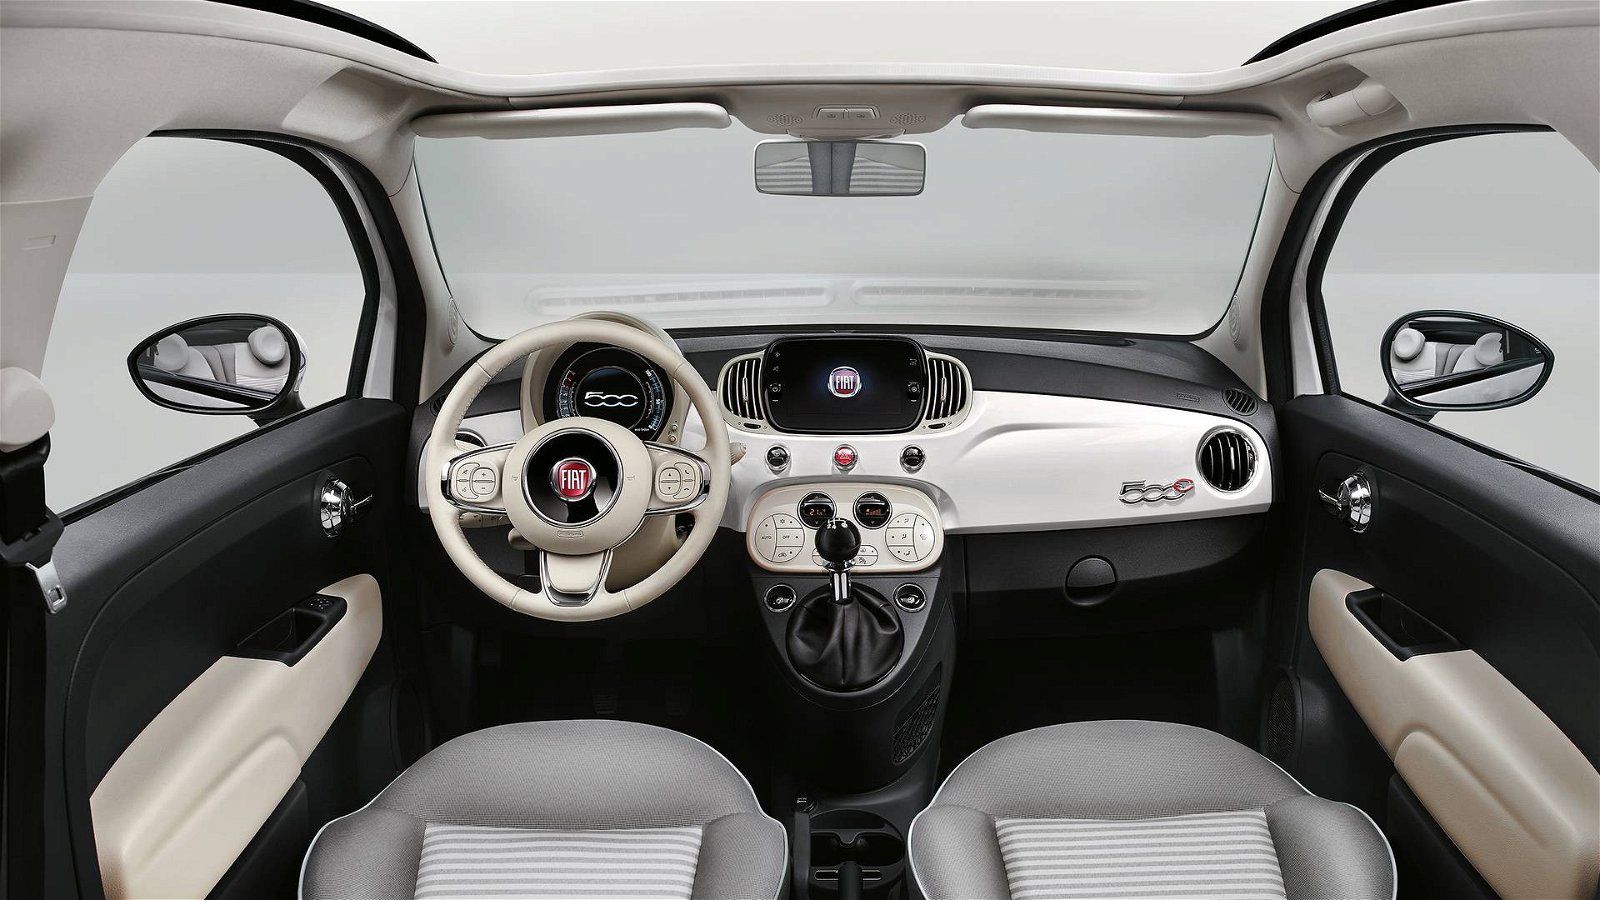 Fiat 500 Collezione Brings Back The